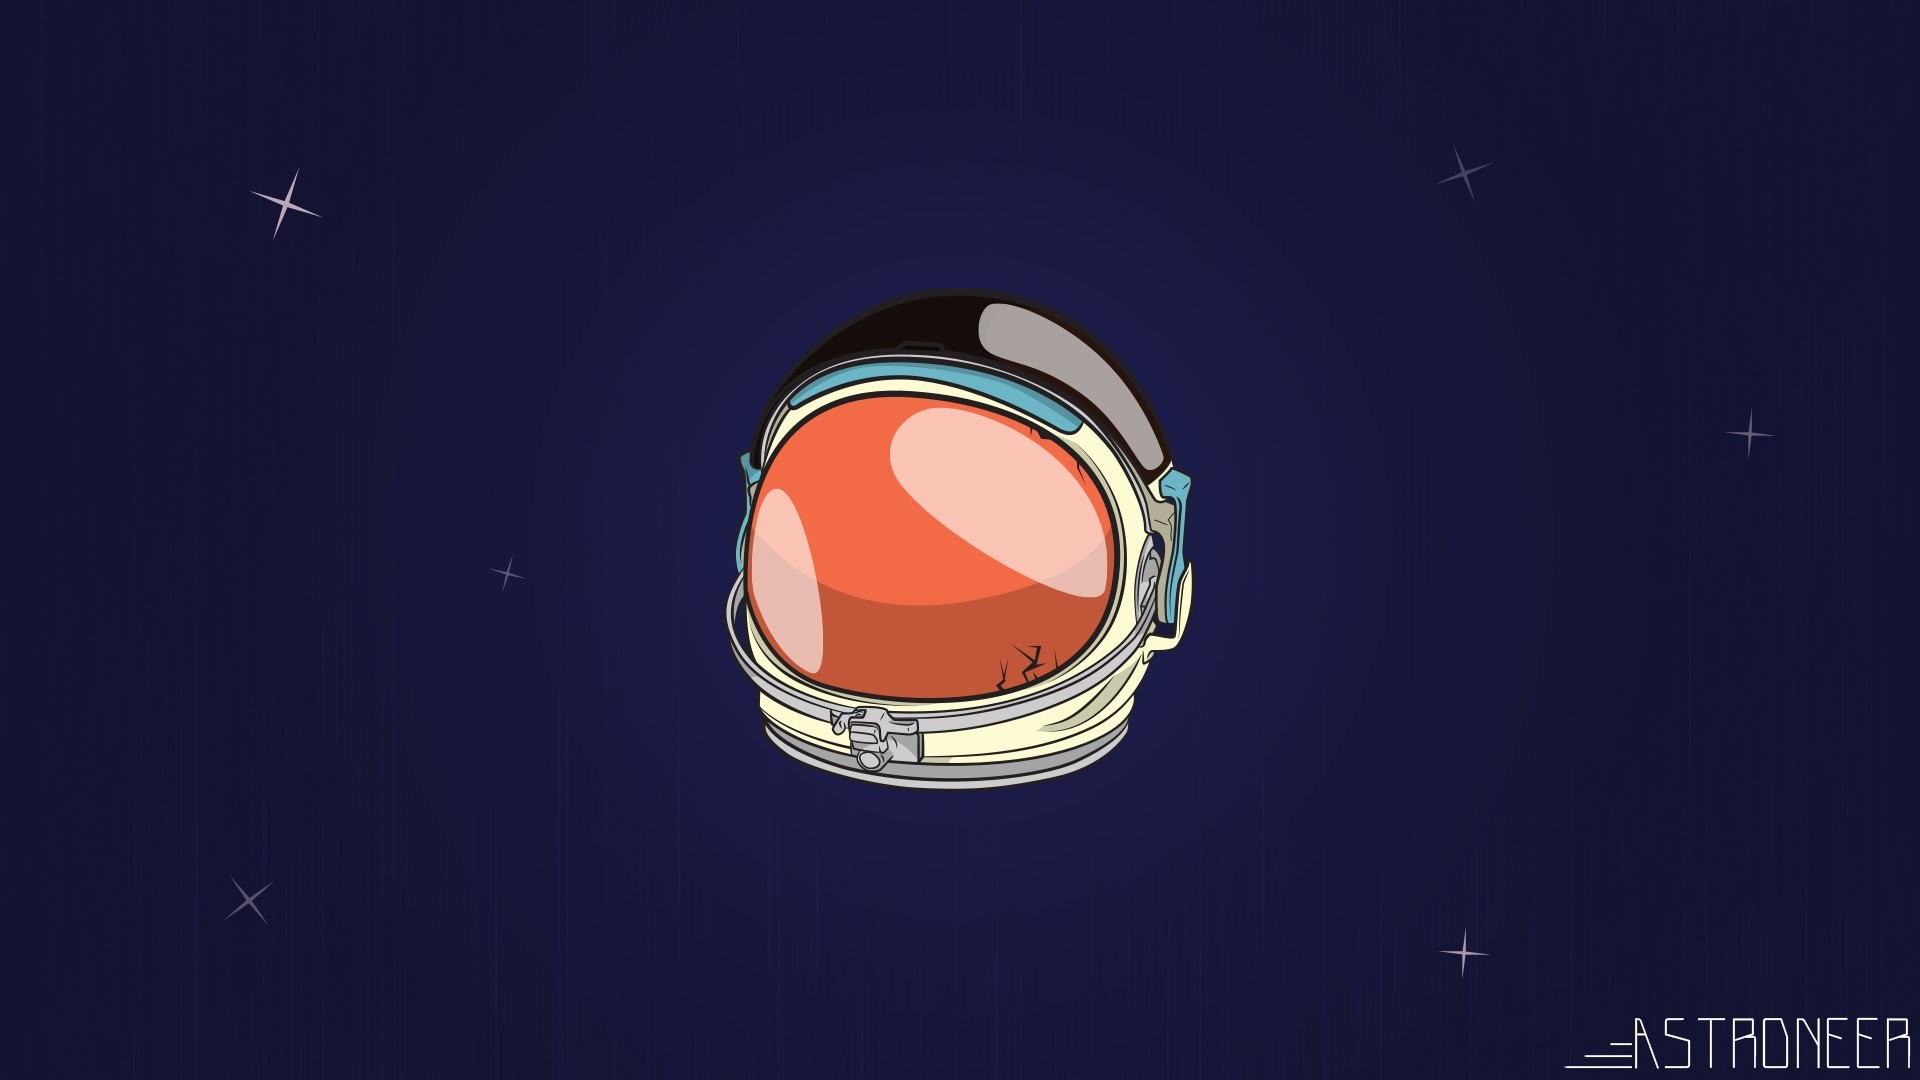 General 1920x1080 Astroneer space helmet astronaut